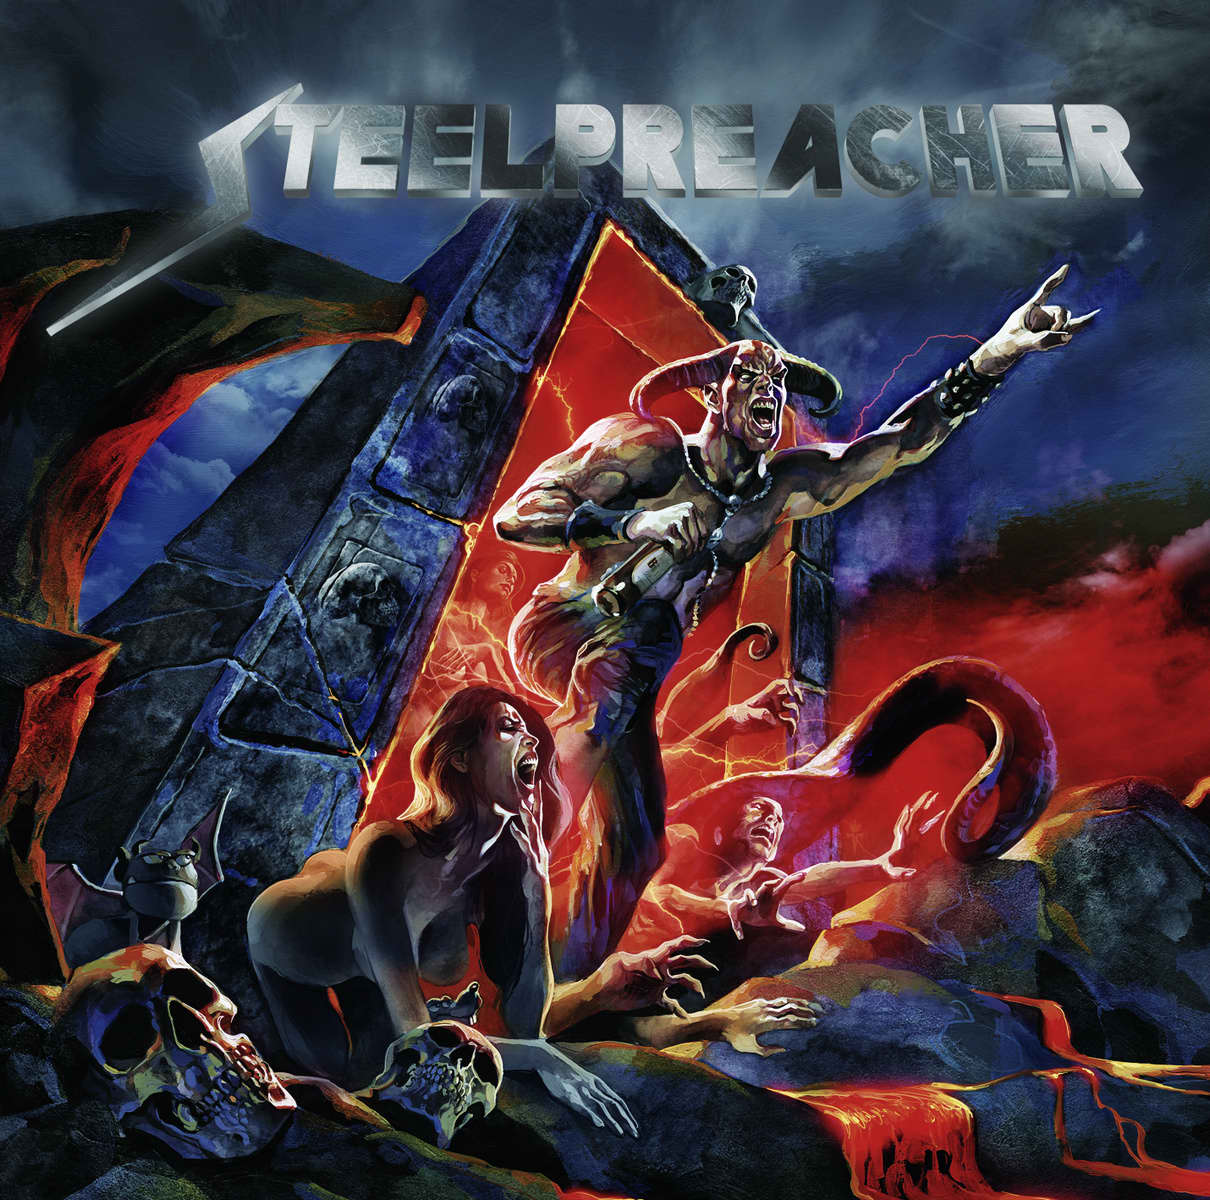 STEELPREACHER / Back from Hell